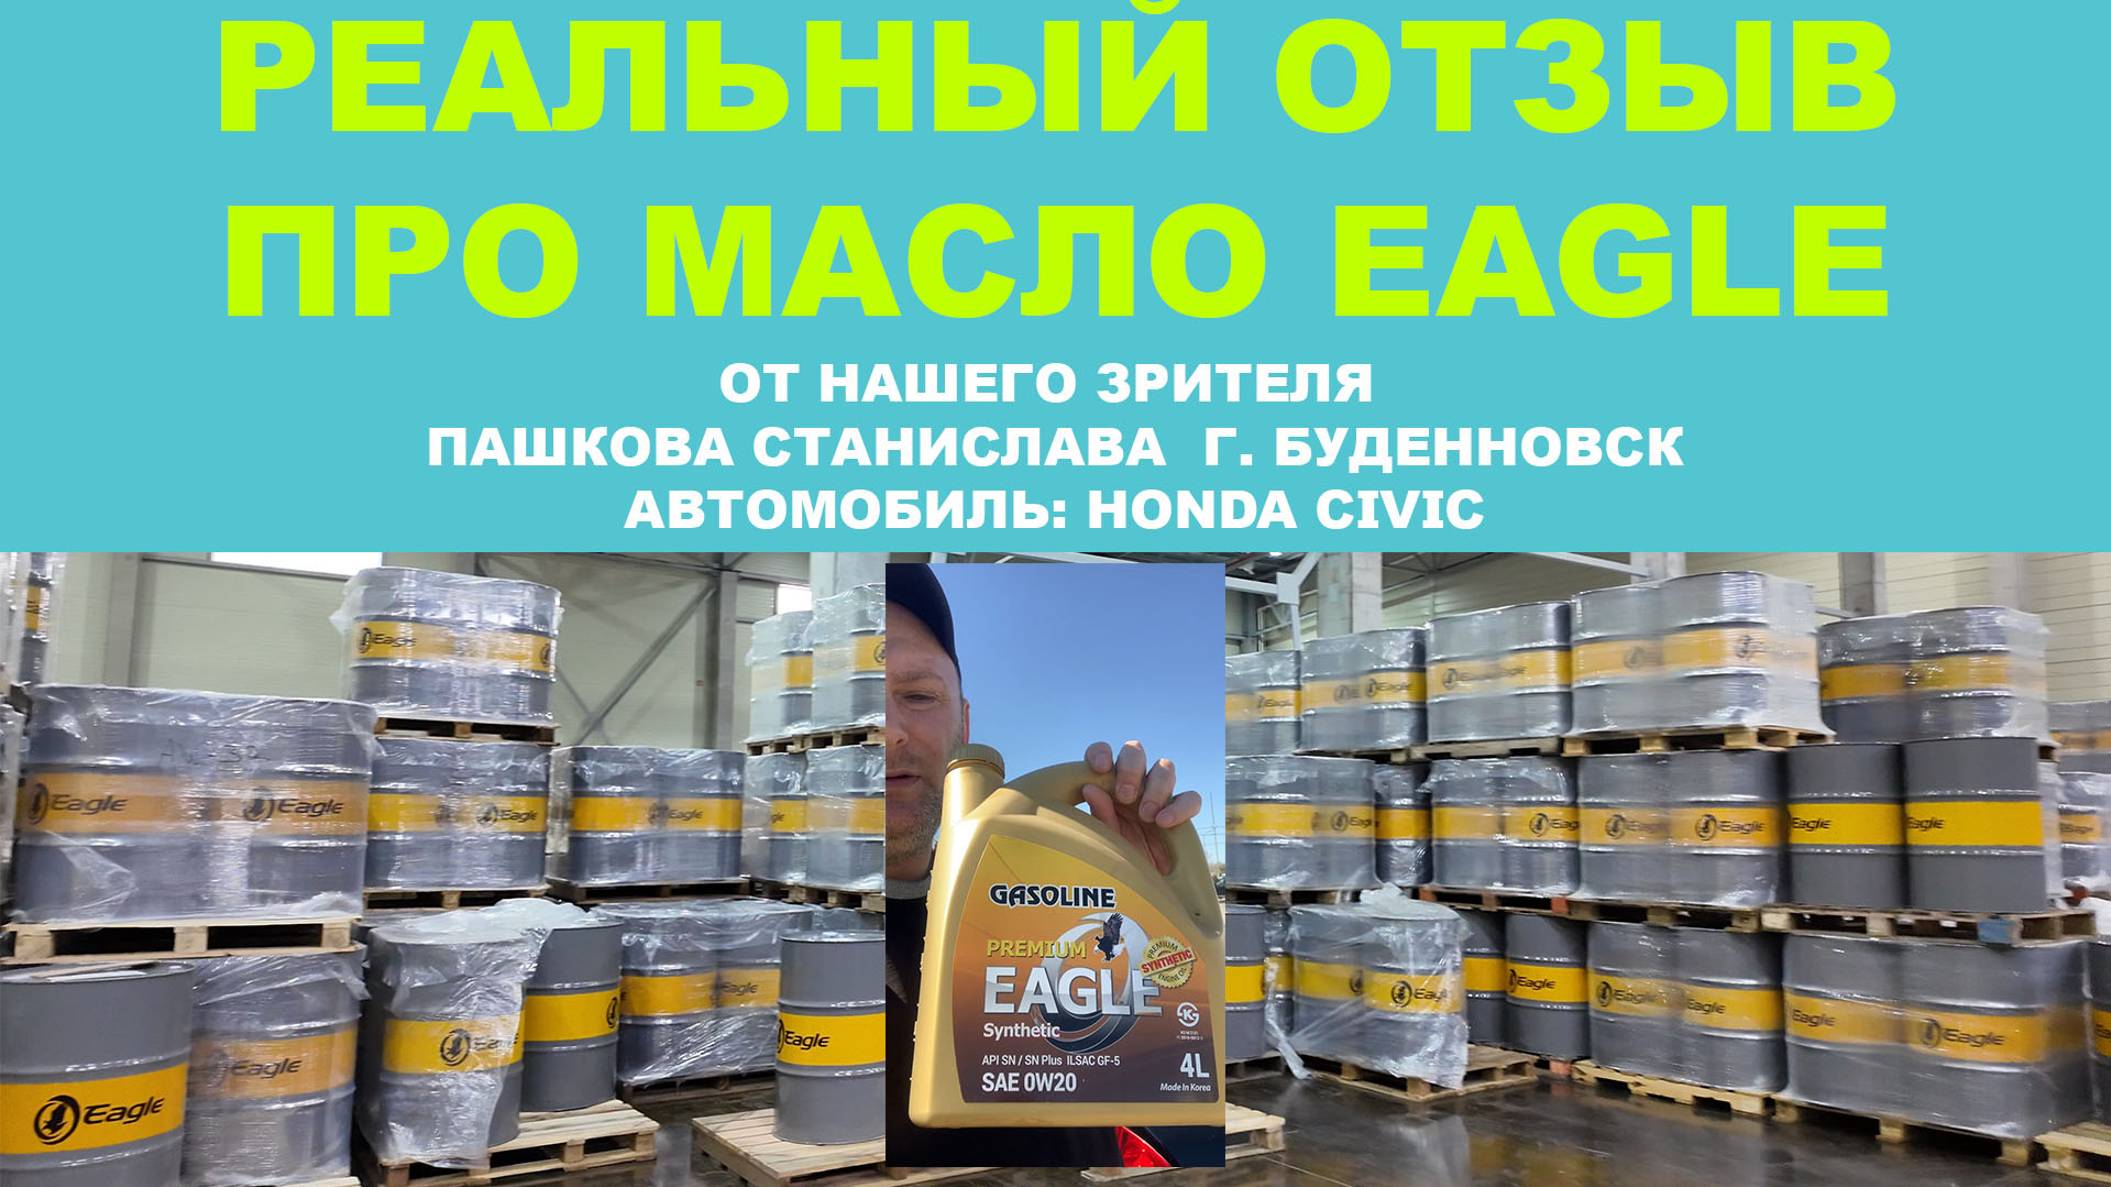 Реальный отзыв про моторное масло EAGLE от нашего зрителя Пашкова Станислава  г. Буденновск